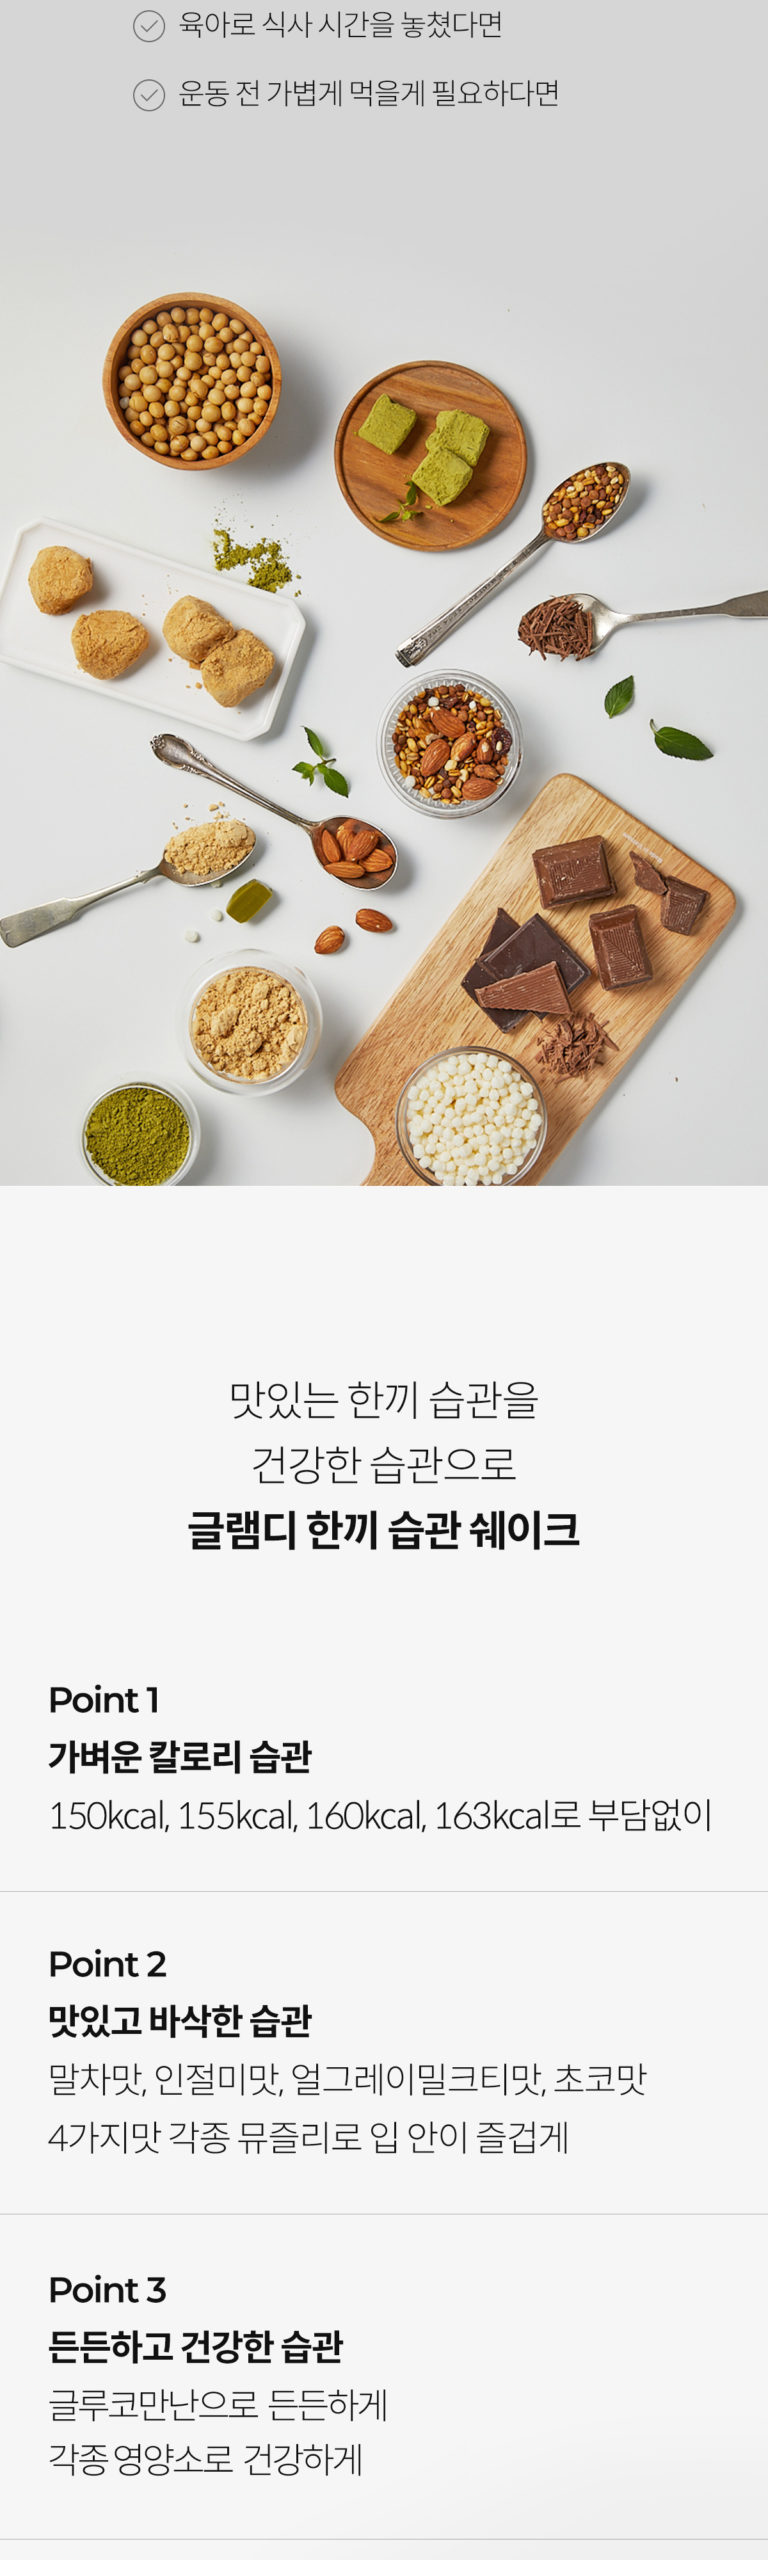 韓國食品-[GLAM.D] Meal Replacement Shake (Chocolate) 40g